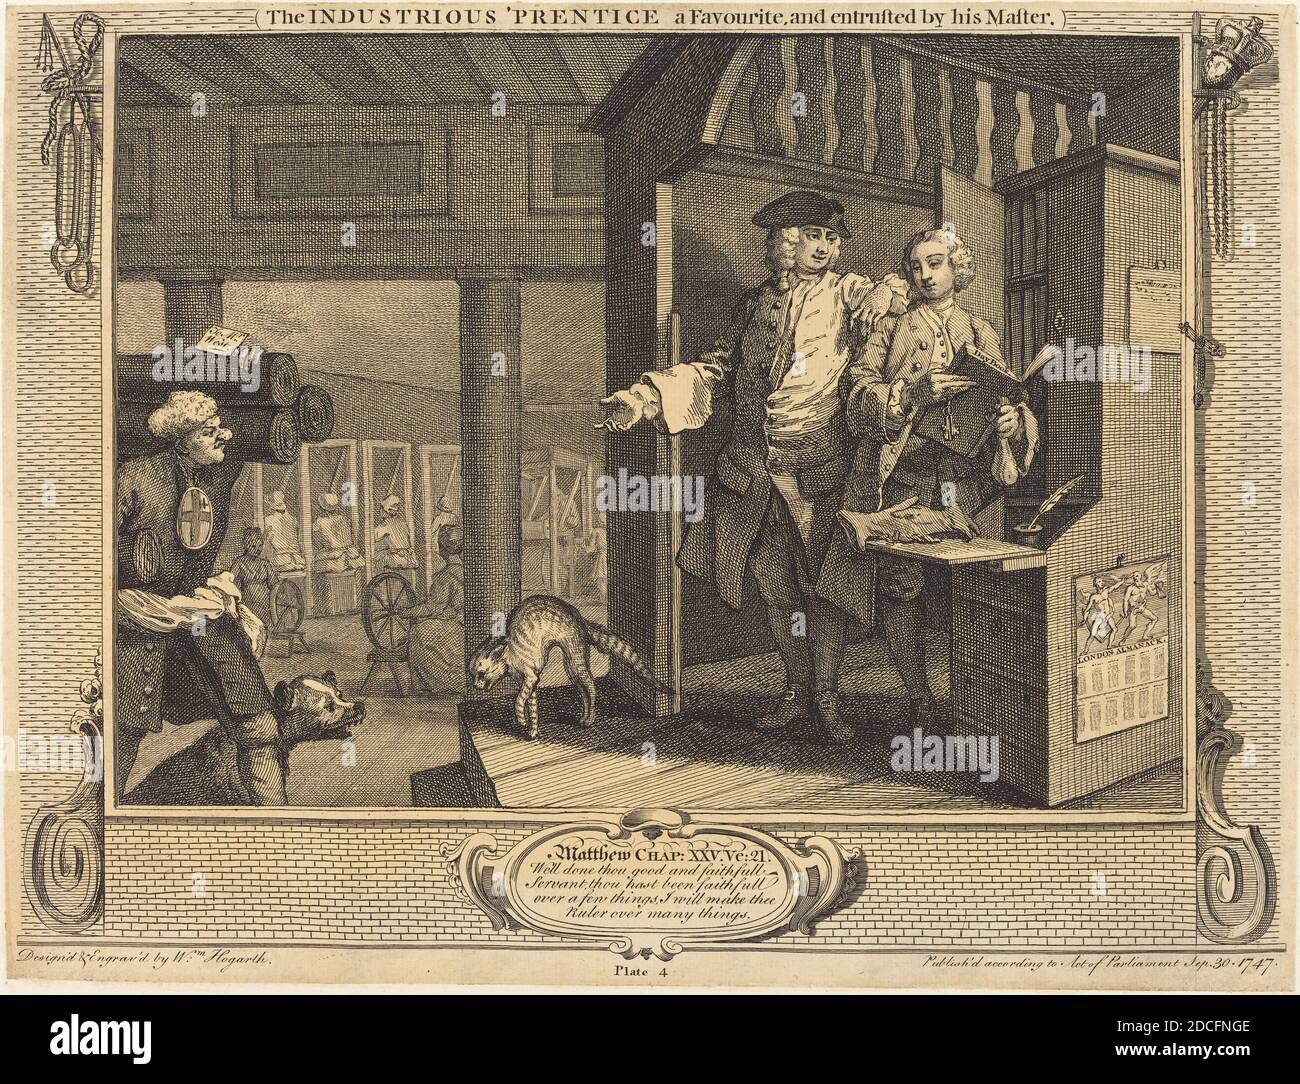 William Hogarth, (artiste), Anglais, 1697 - 1764, l'industriel 'Prentice a Favorite, et confié par son Maître, Industrie et idleness: pl.4, (série), 1747, gravure et gravure Banque D'Images